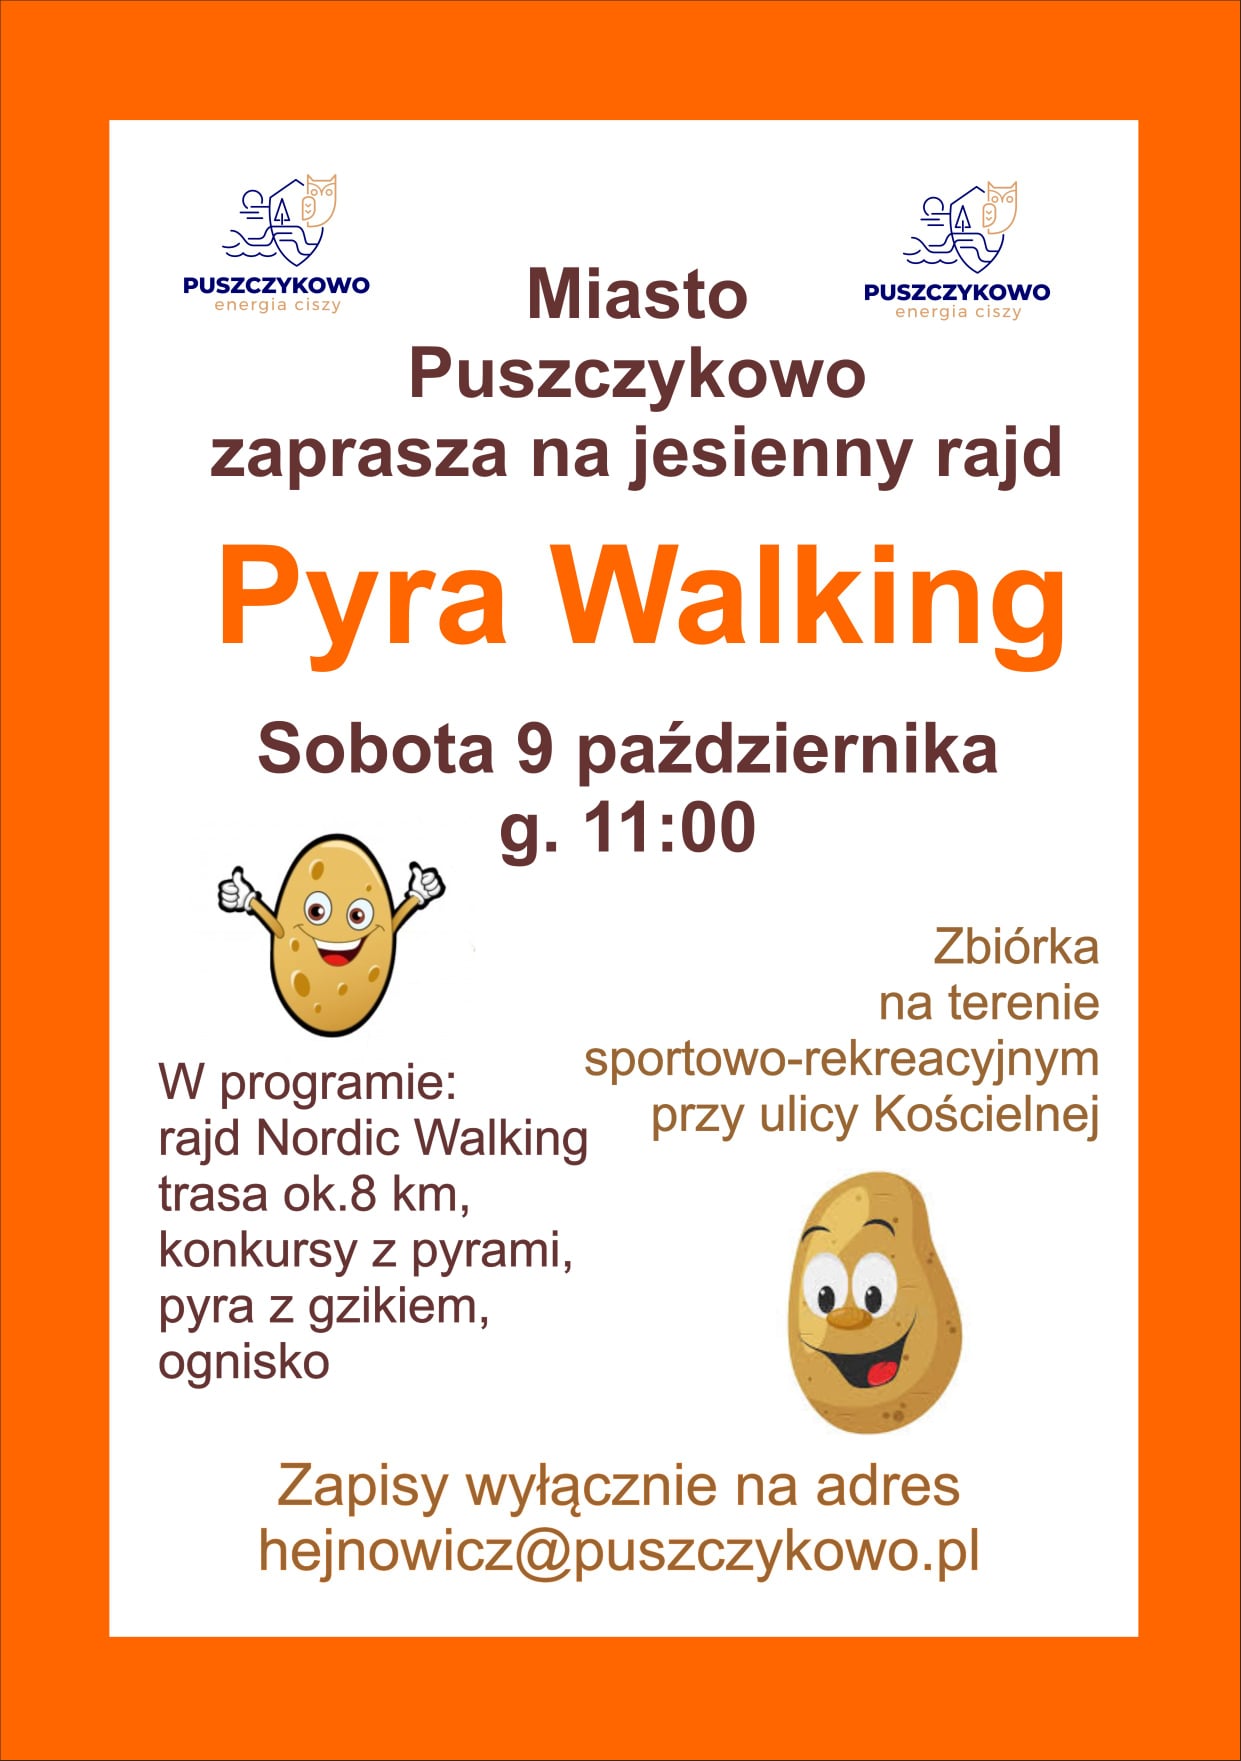 Zapraszamy na jesienny rajd Pyra Walking!